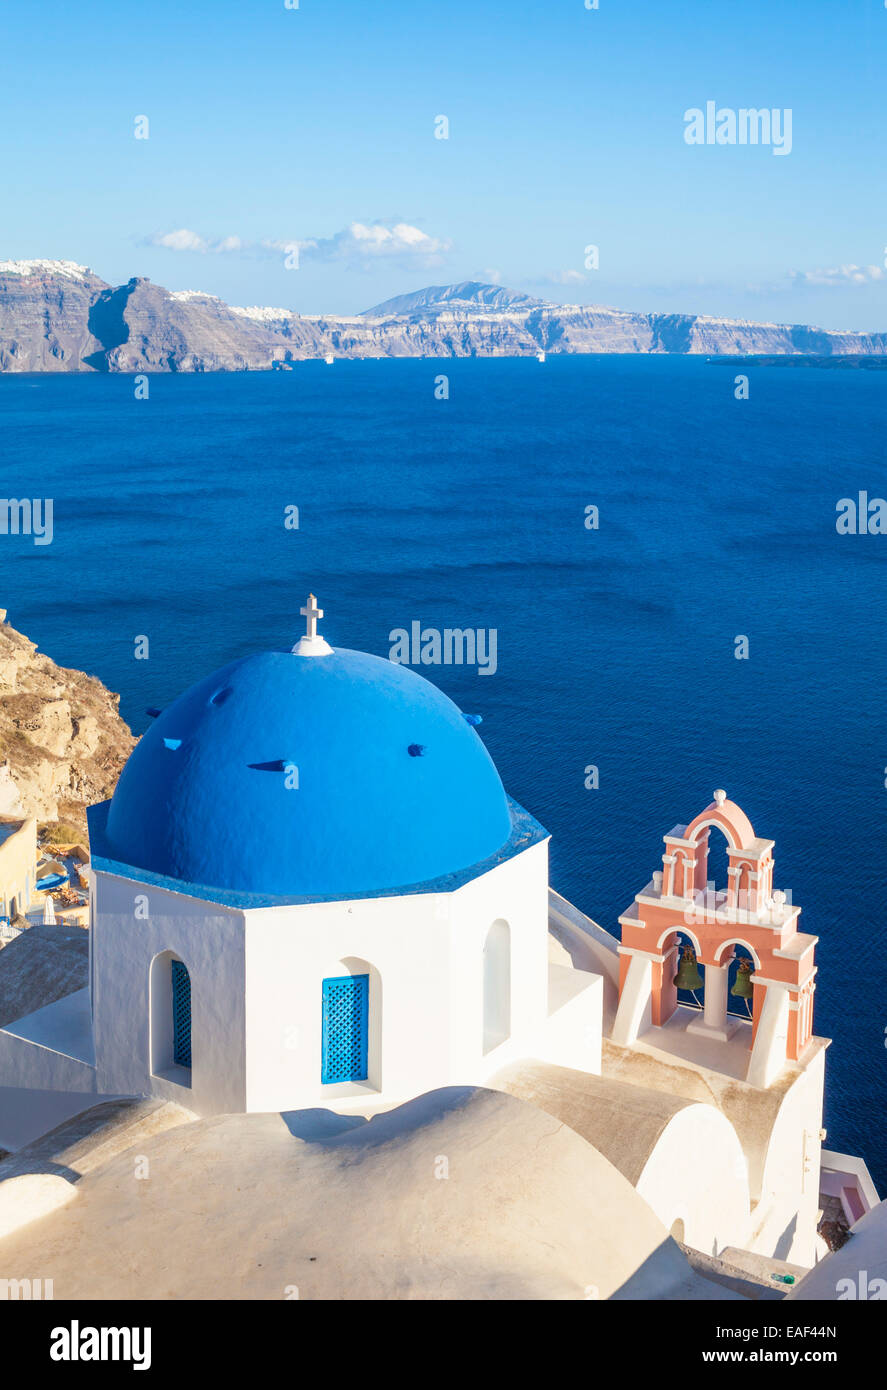 L'église grecque blanc avec dôme bleu & pink Bell Tower, Oia, Santorin, Santorini, Cyclades, îles grecques, Grèce, Union européenne, Europe Banque D'Images